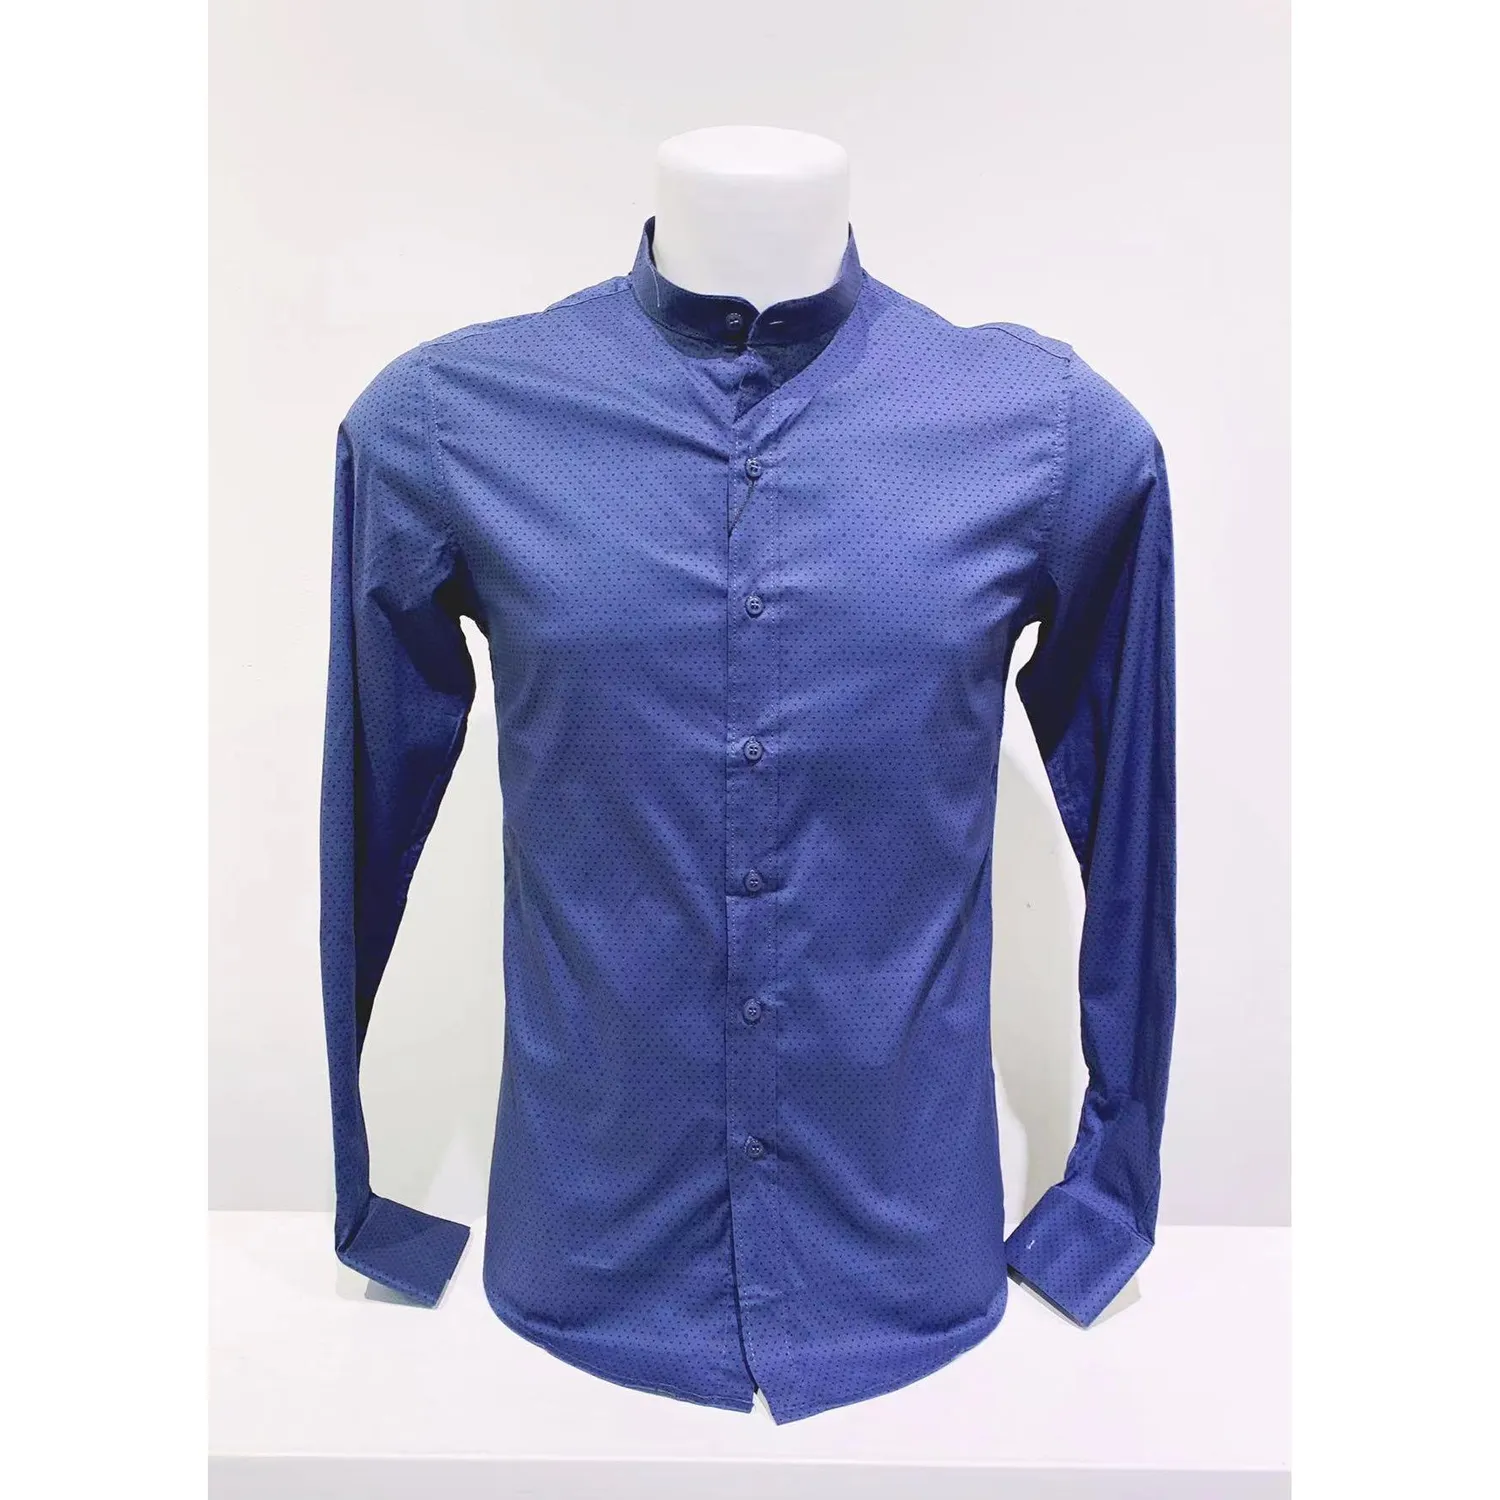 Ανδρικό μακρυμάνικο πουκάμισο με σχέδιο μπλε ανοιχτό